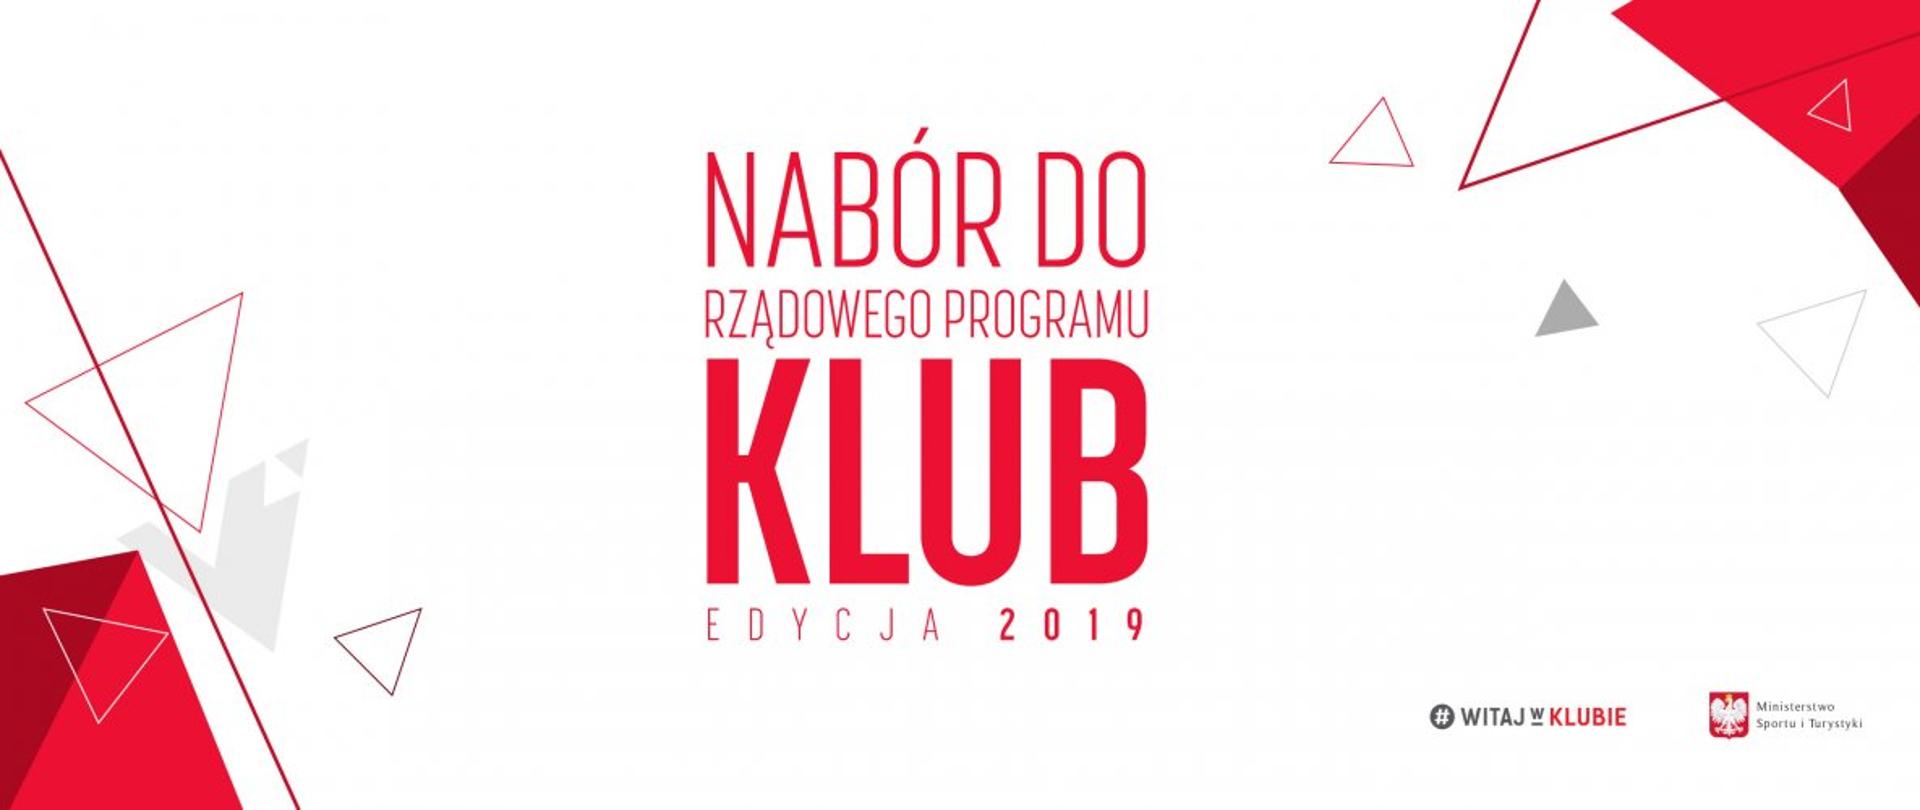 Trwa nabór do Rządowego Programu KLUB – edycja 2019!